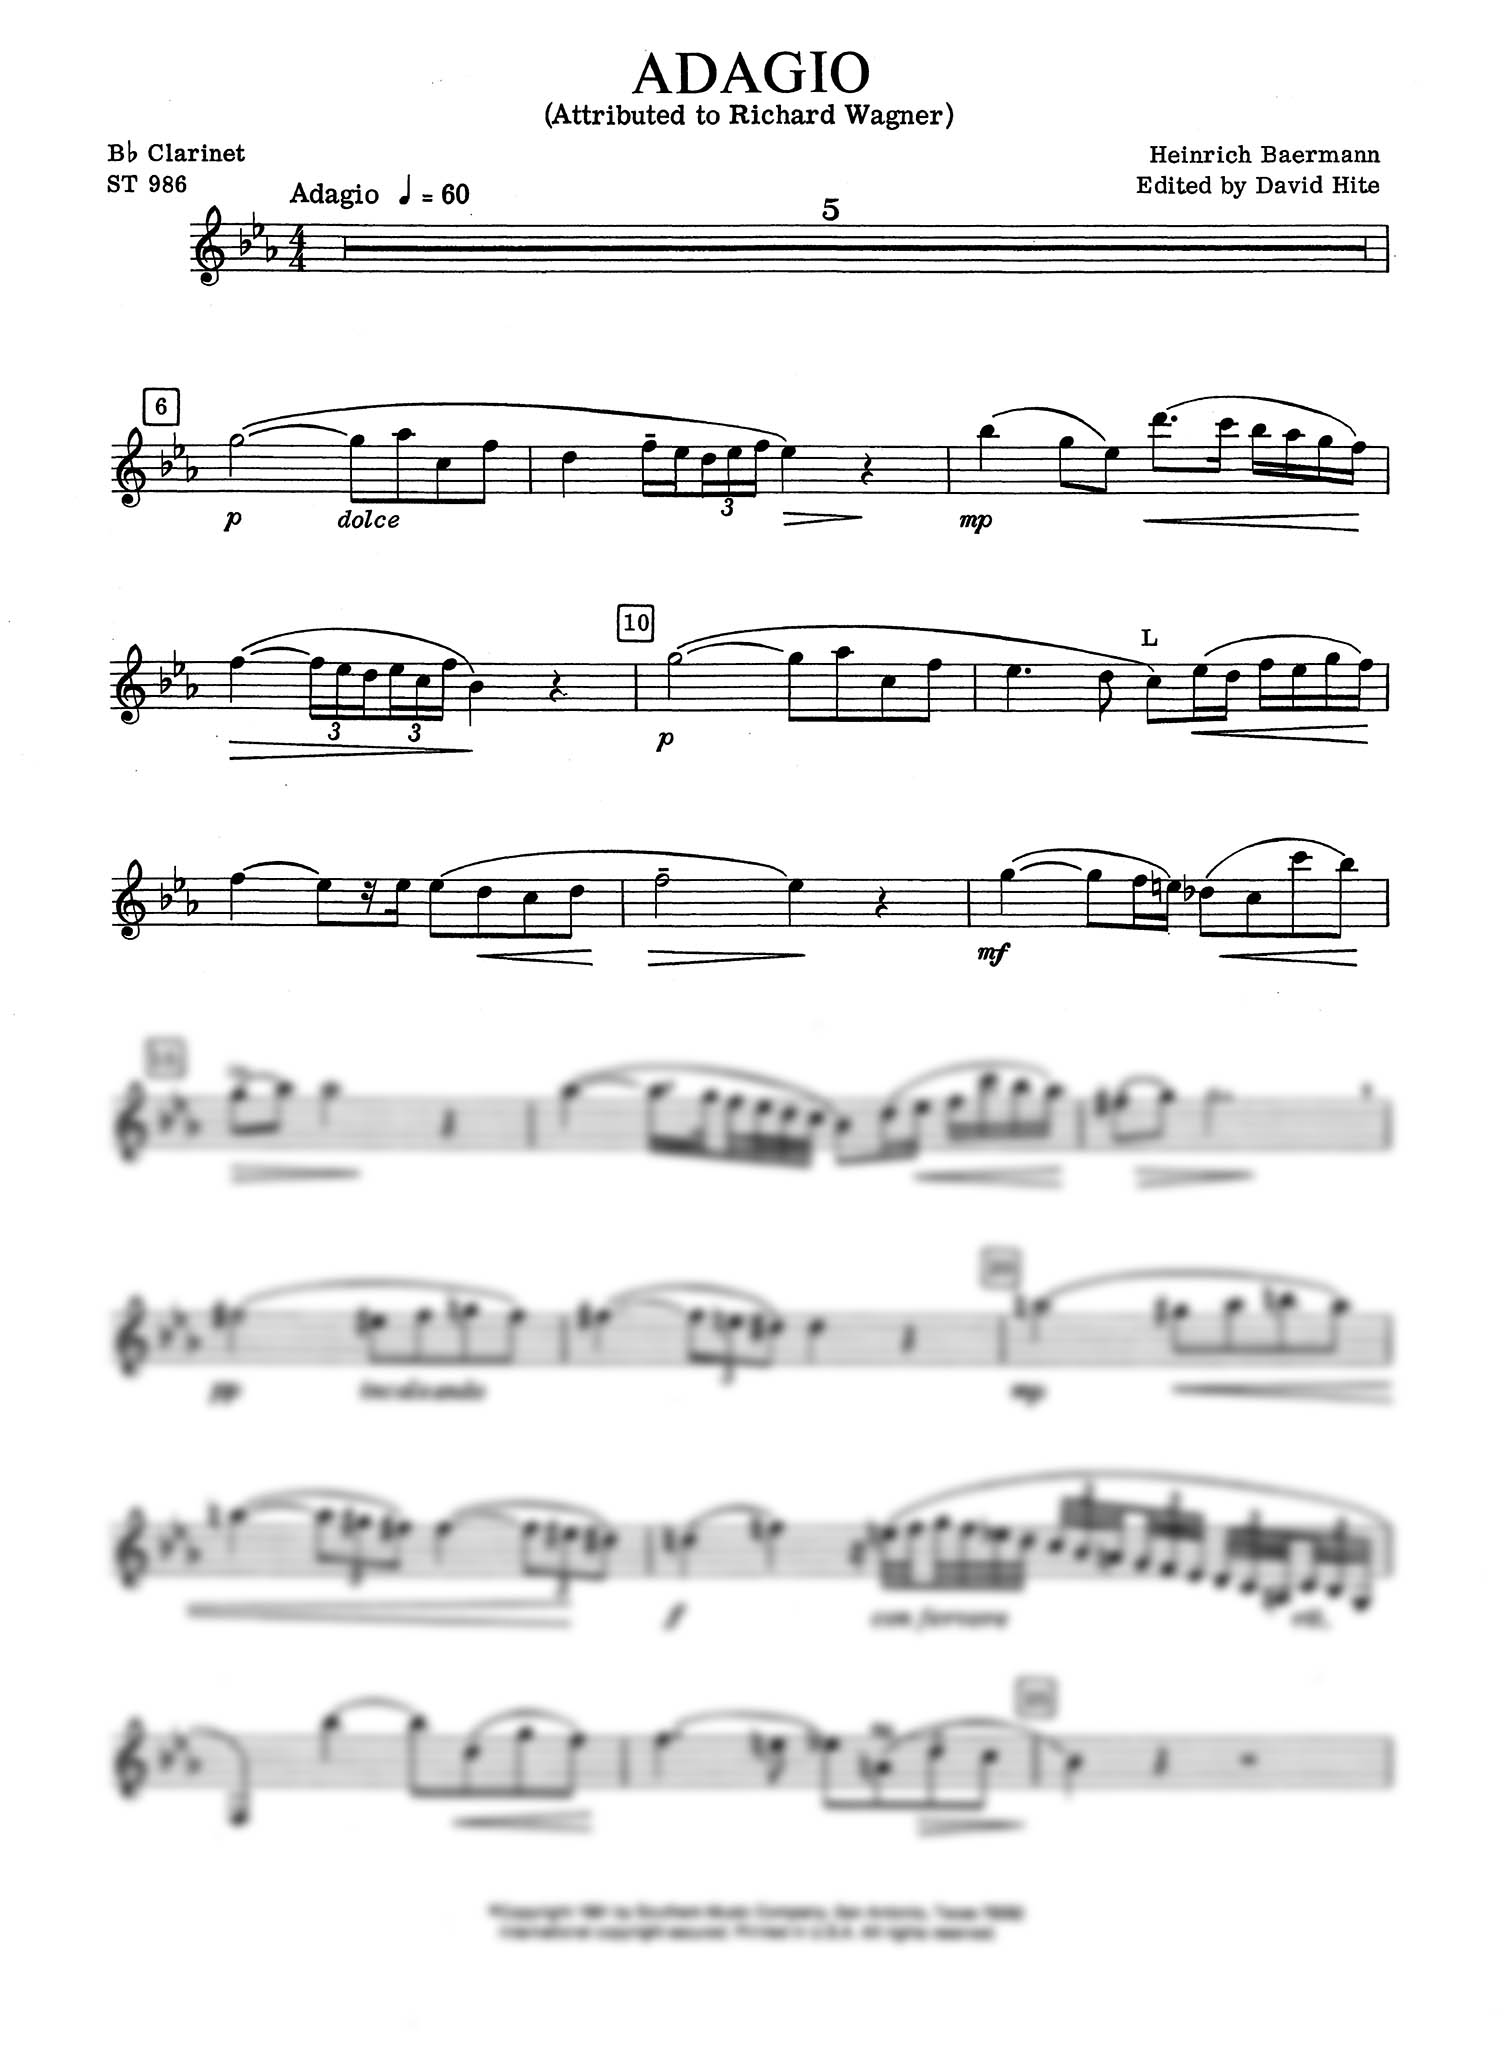 Adagio Clarinet part